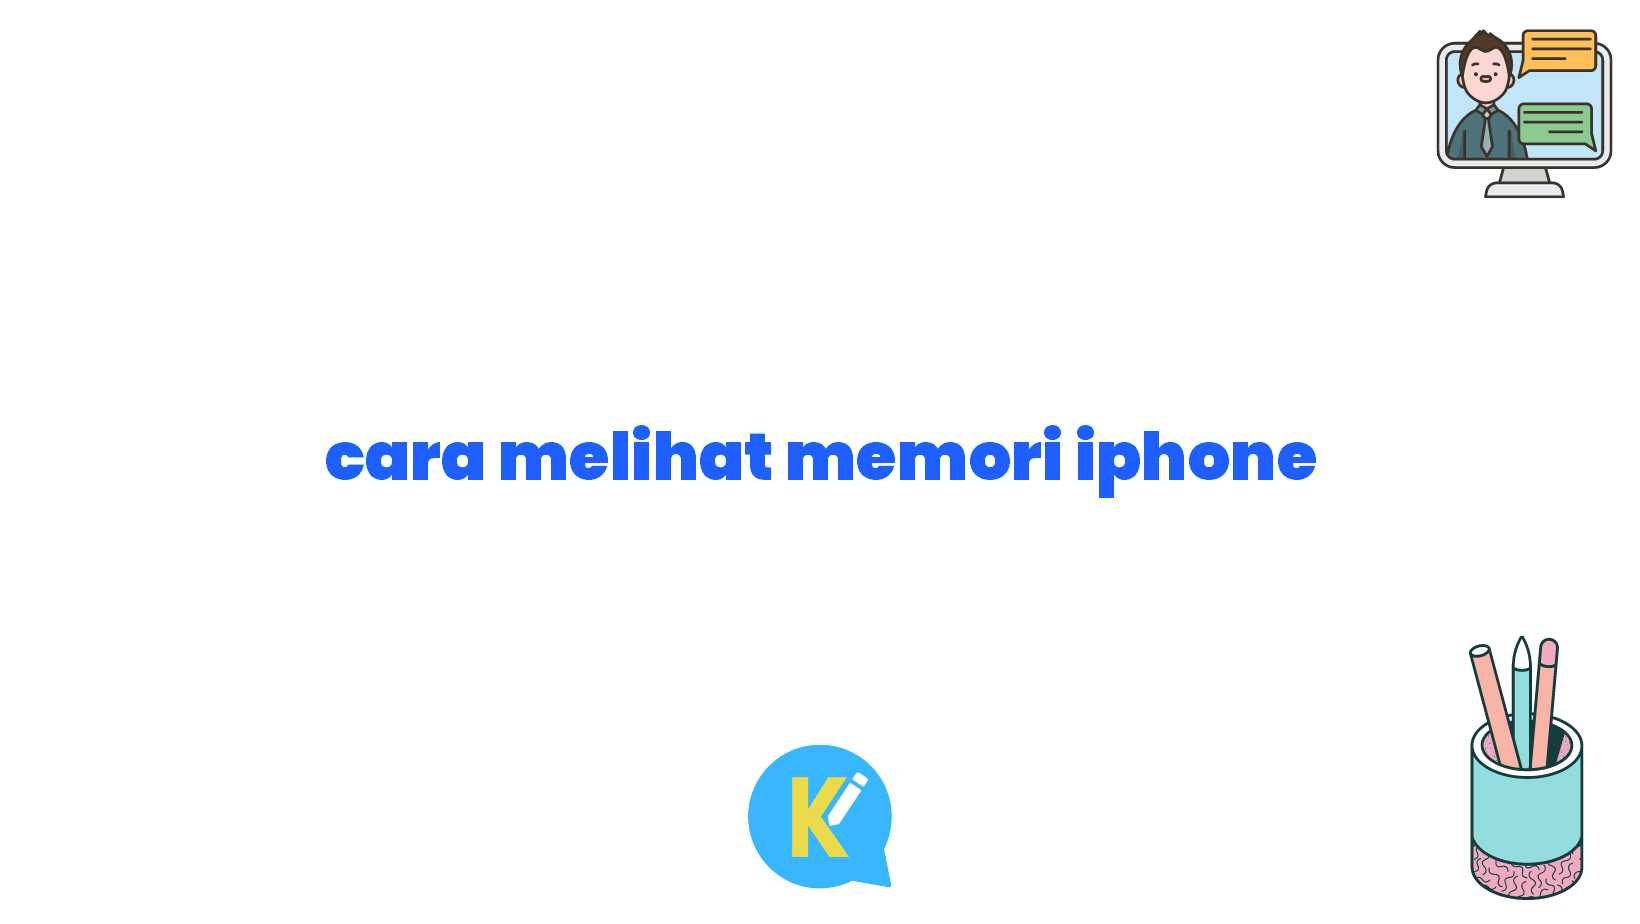 cara melihat memori iphone